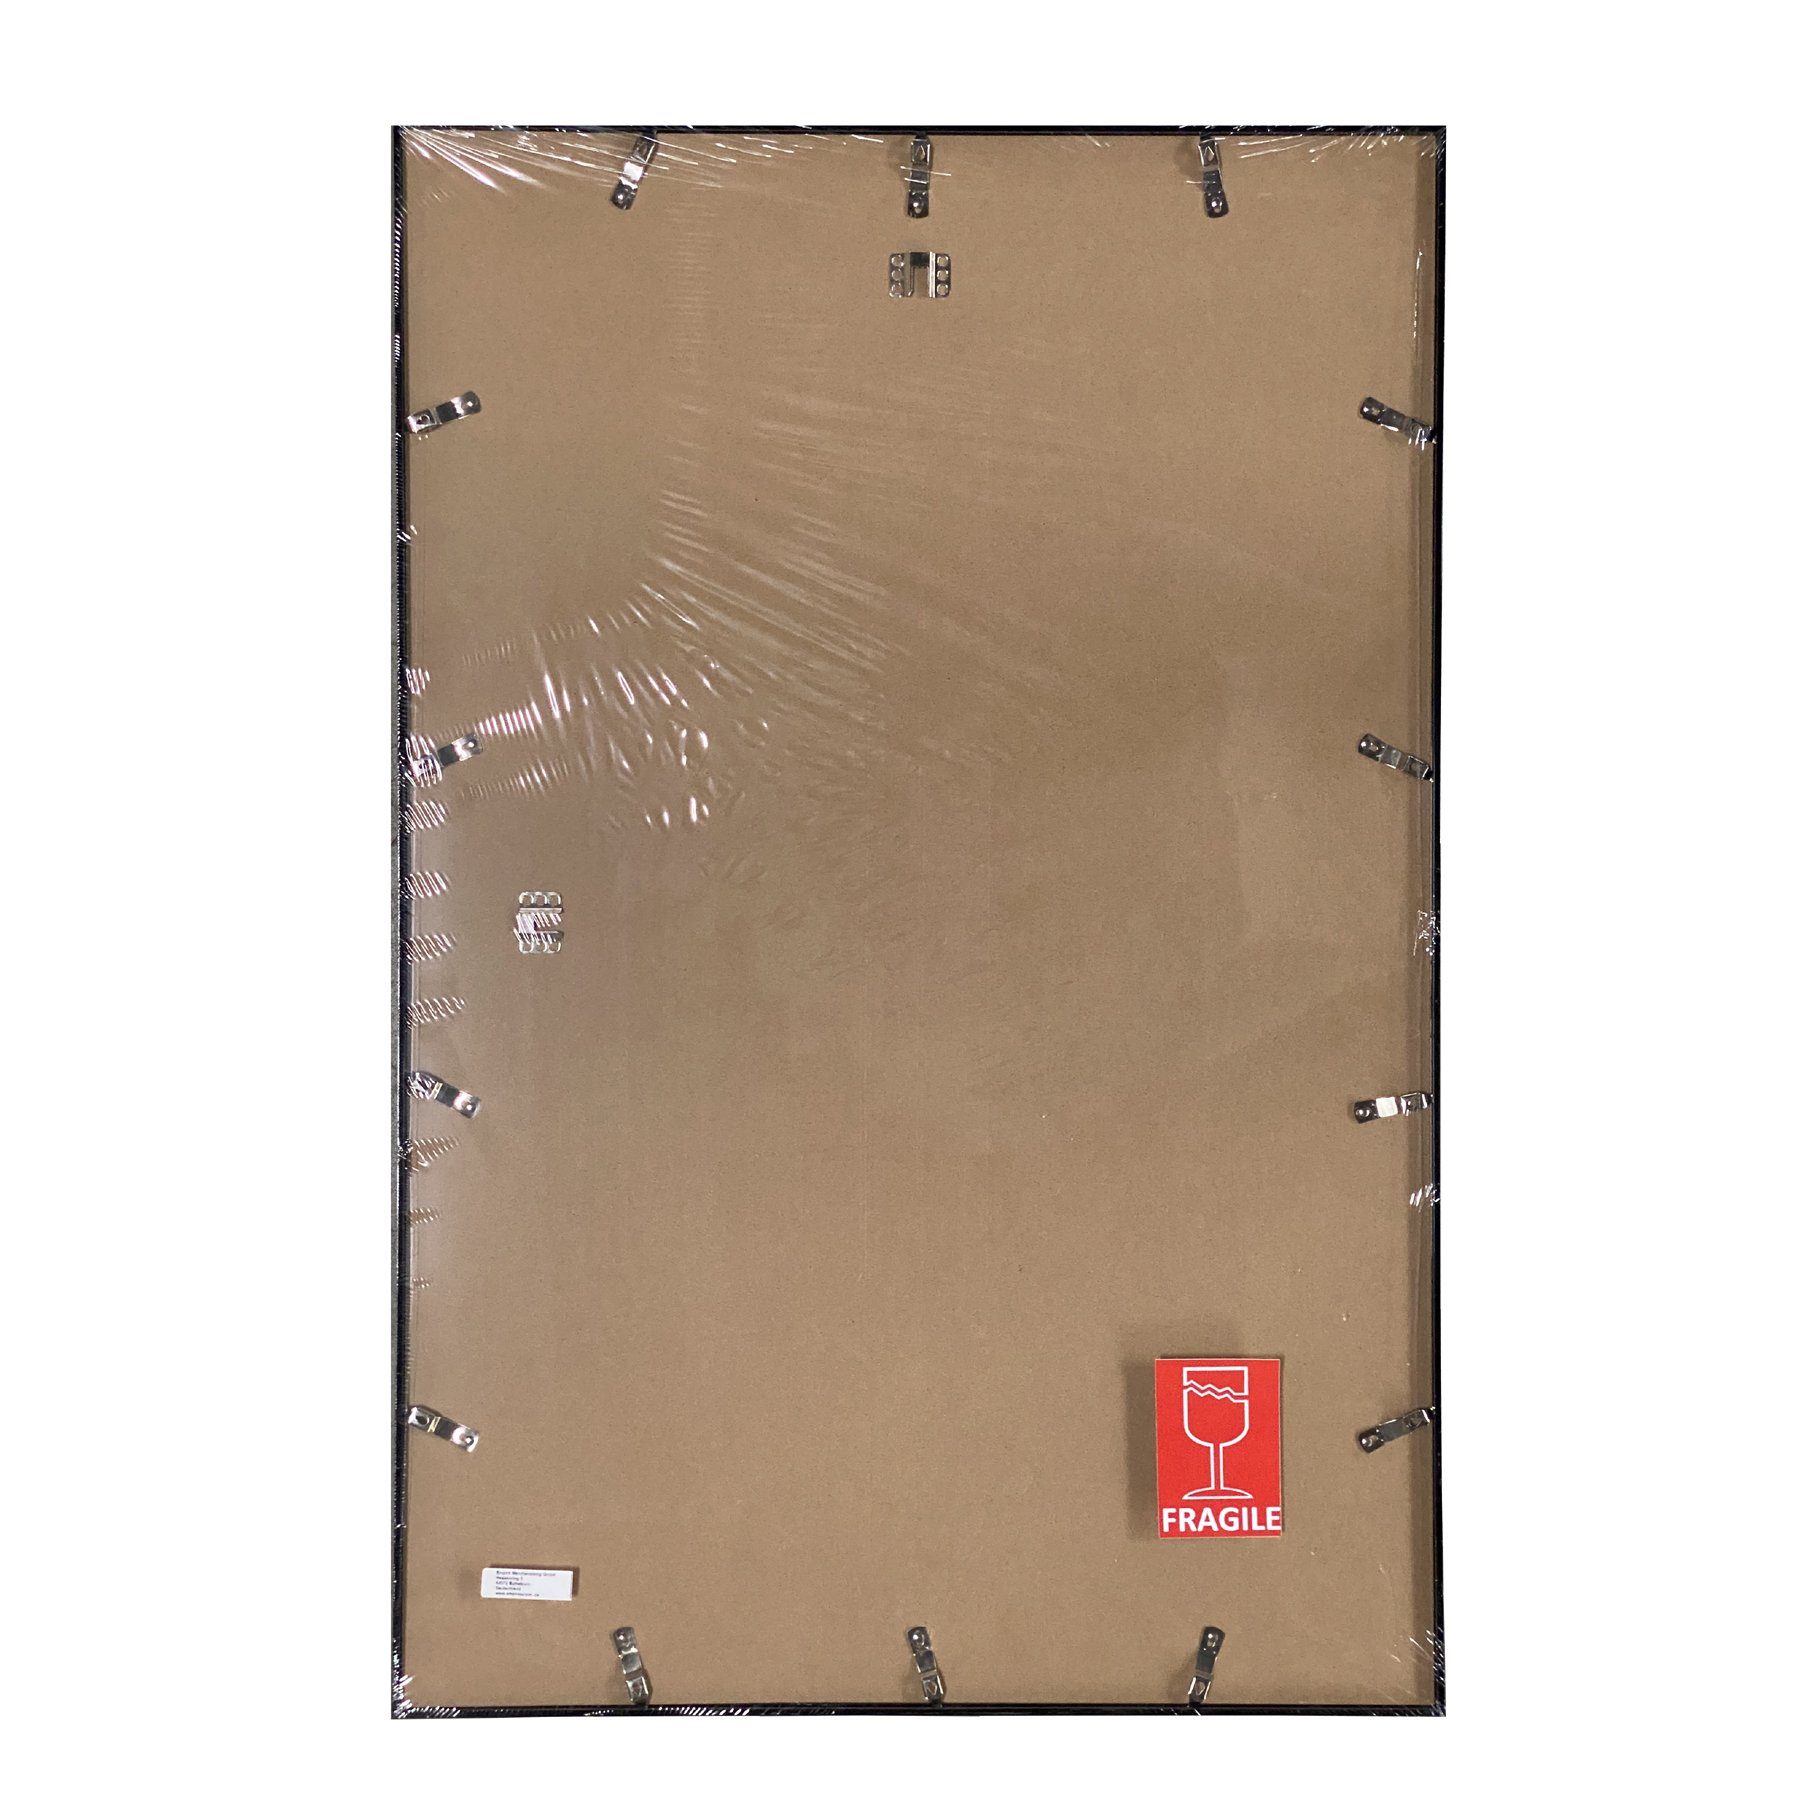 weiss Kunststoff Profil: Rahmen empireposter mit Wechselrahmen Acryl-Scheibe Farbe Maxi-Poster Shinsuke® Posterrahmen 15mm 61x91,5cm,